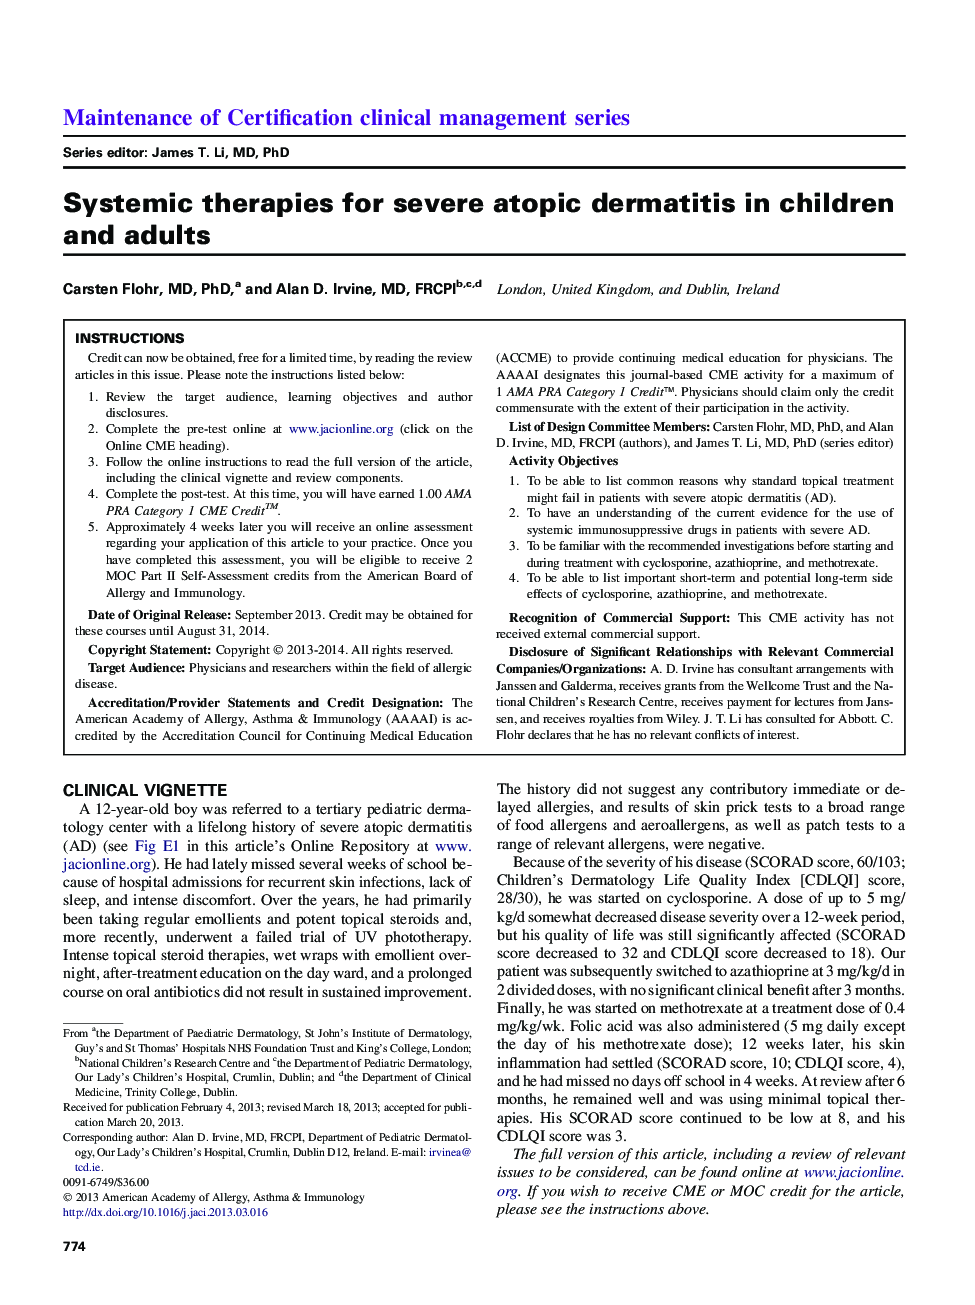 درمان های سیستماتیک برای درماتیت آتوپیک شدید در کودکان و بزرگسالان 